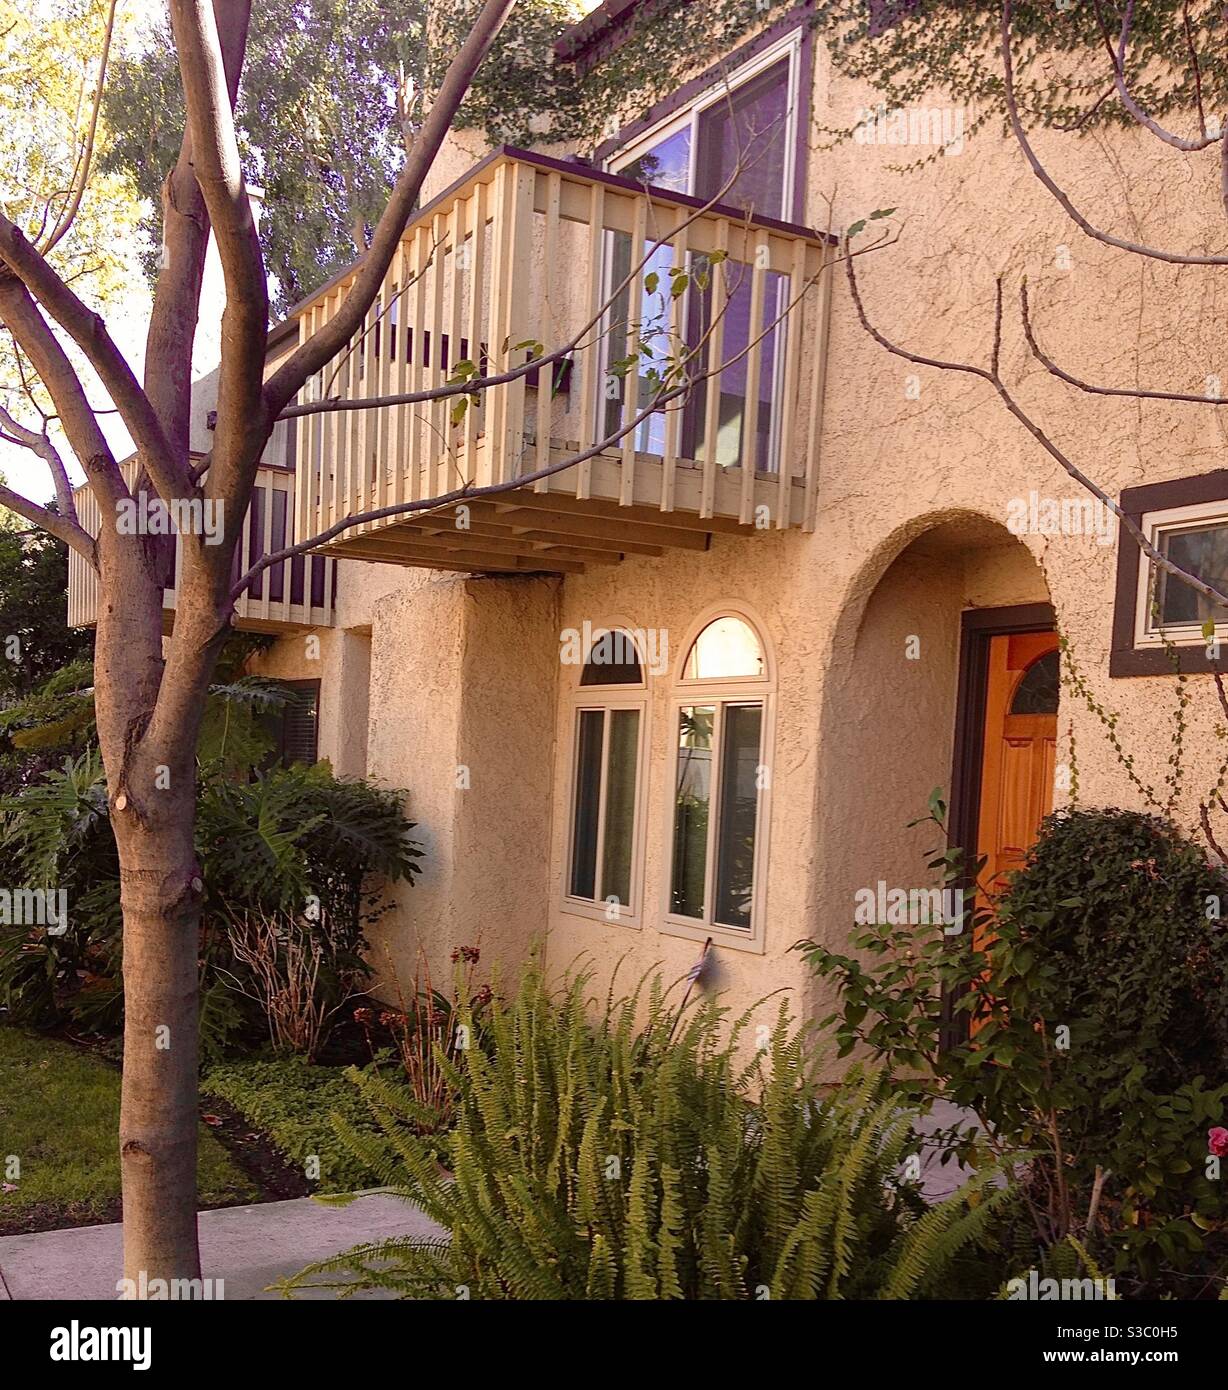 Entrata ad arco in un condominio della California del Sud con lussureggianti giardini. Iconica costruzione in stucco con balcone affacciato sugli alberi. Foto Stock